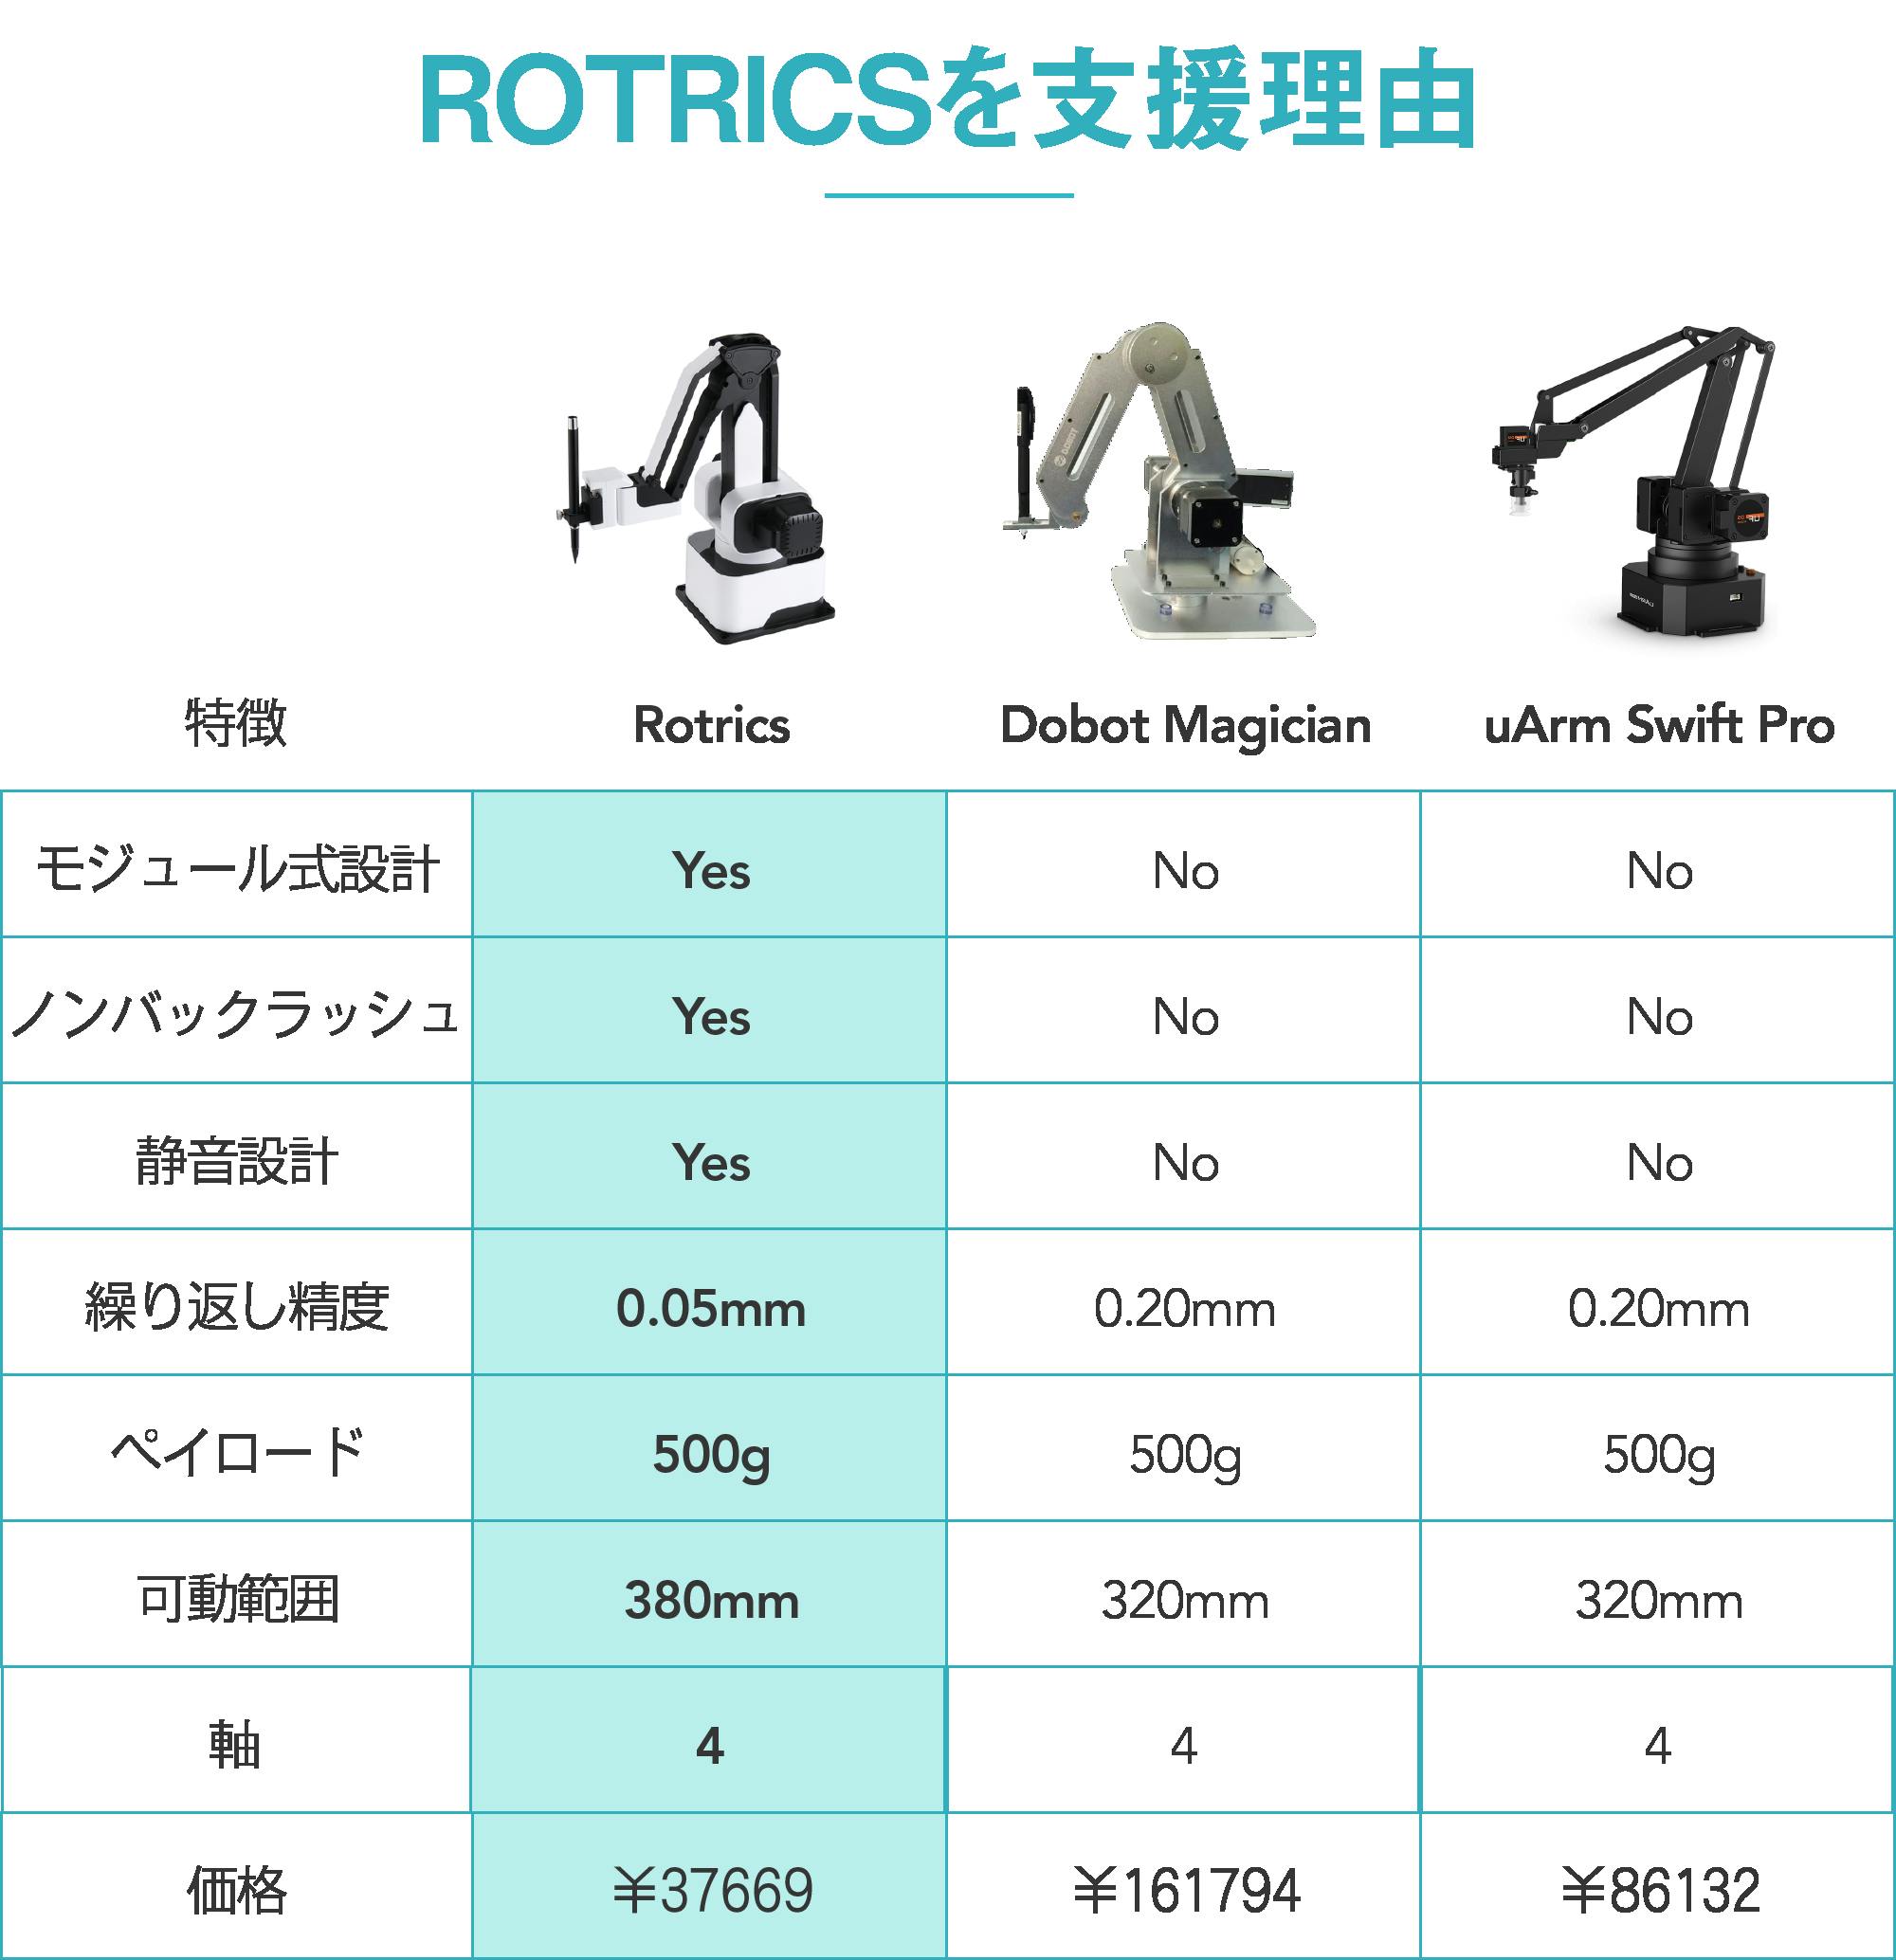 Rotrics モジュール式オールインワン卓上ロボットアーム CAMPFIRE (キャンプファイヤー)